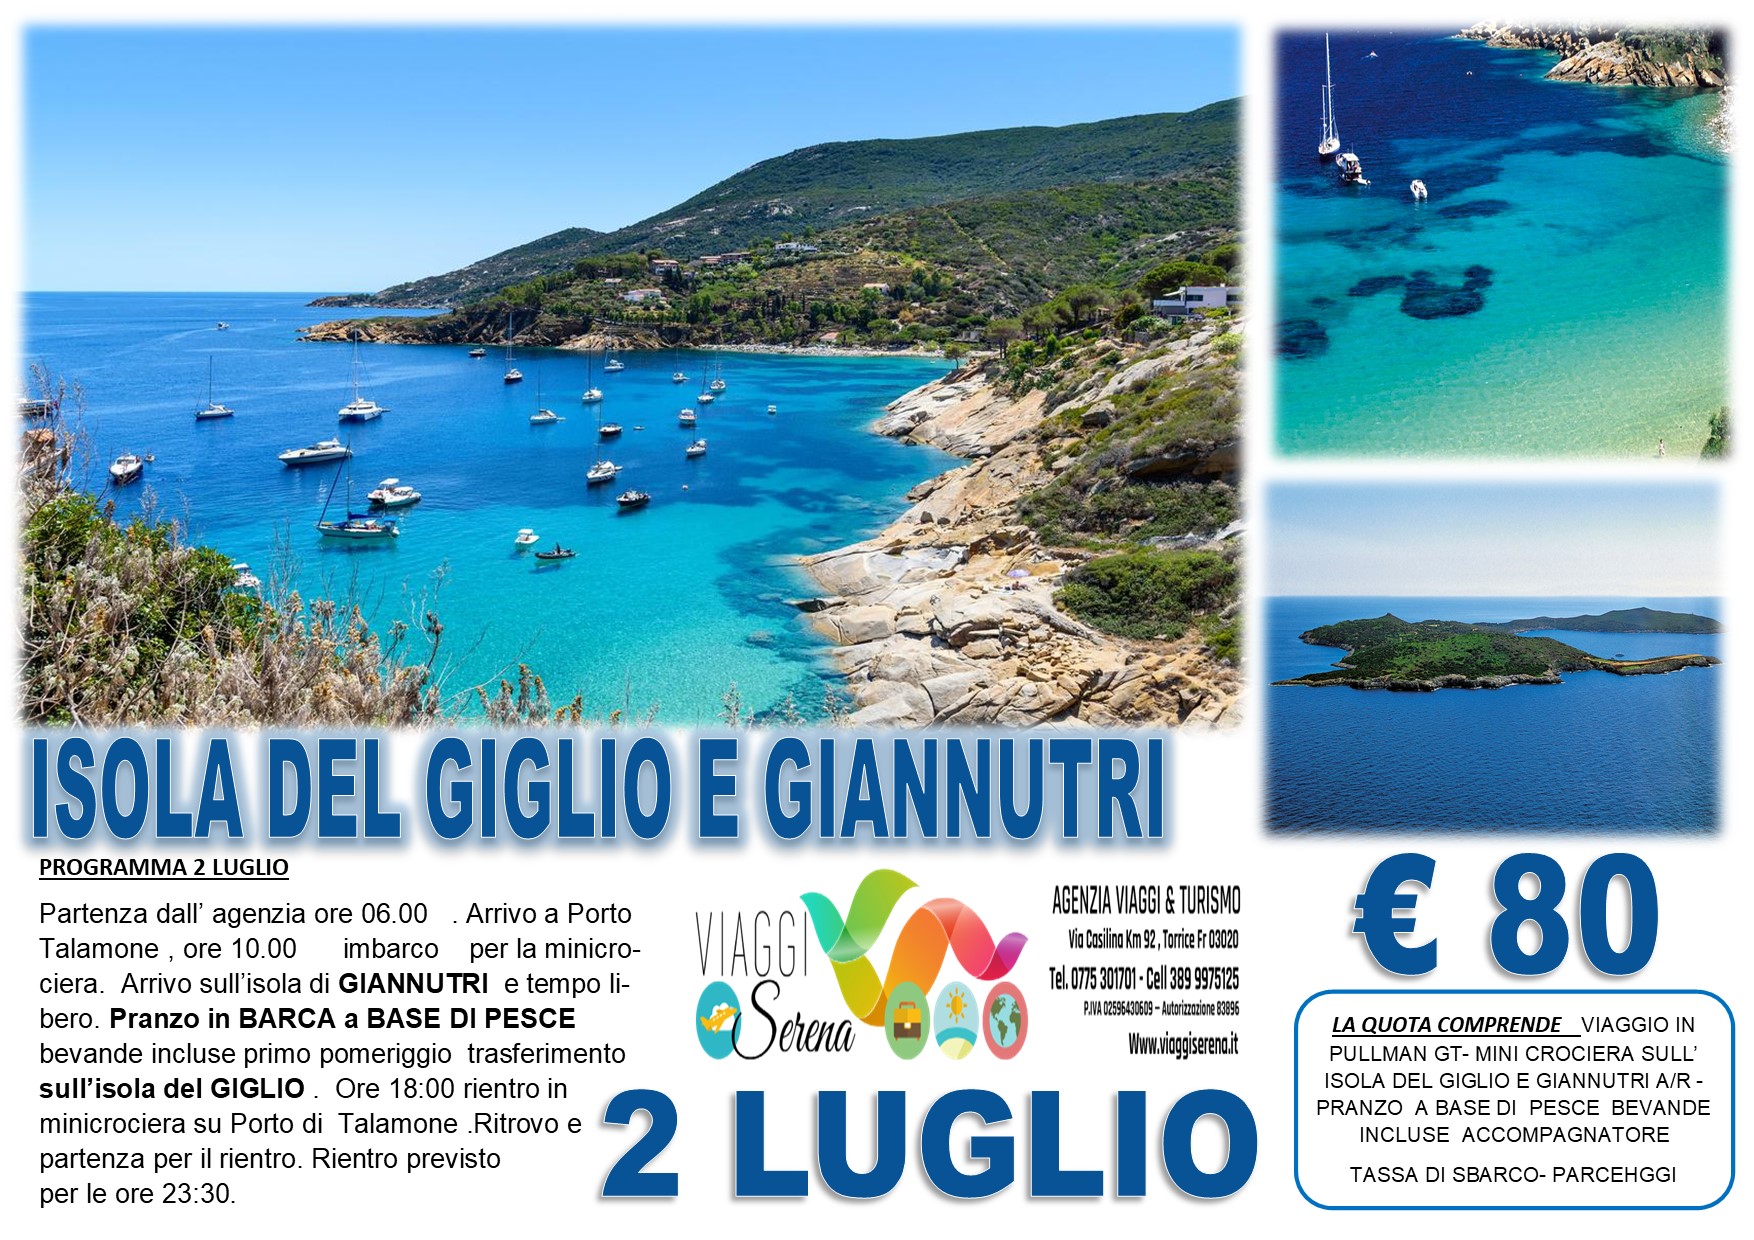 Viaggi di Gruppo: Mini Crociera “Isola del Giglio & Giannutri”  con Pranzo 2 Luglio € 80,00